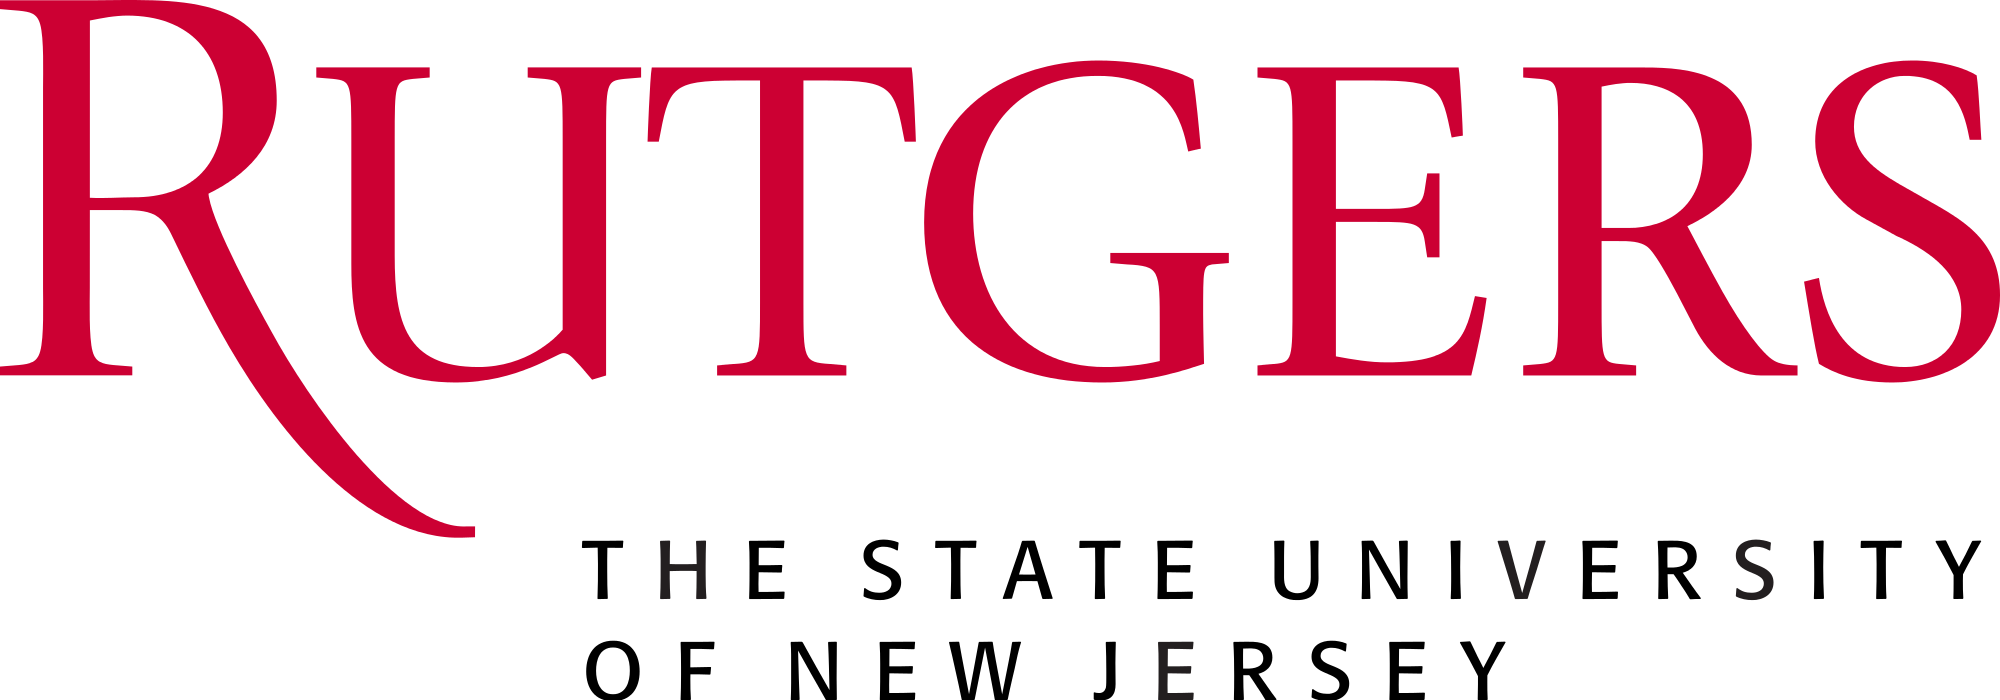 Rutgers PNG - 85501